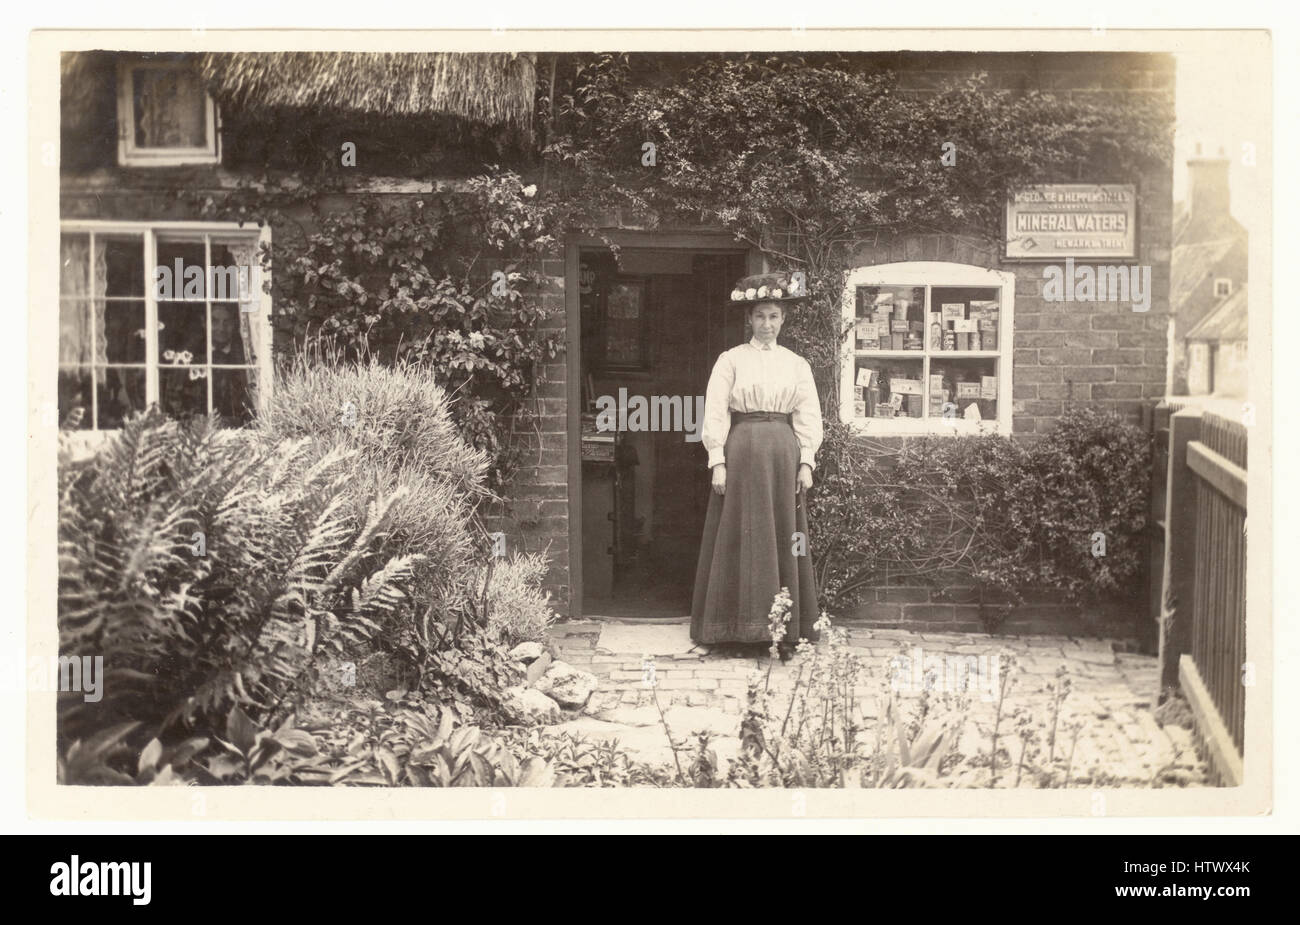 Originale edwardianische nostalgische Postkarte der Ladeninhaberin, Einzelhändlerin, vor ihrem ländlichen Dorfladen, Waren im Fenster, zu ihrem Haus, möglicherweise Newark in Trent, Nottinghamshire Edwardianerin. Edwardianerin. Edwardianisches Geschäft. Großbritannien um 1905 Stockfoto